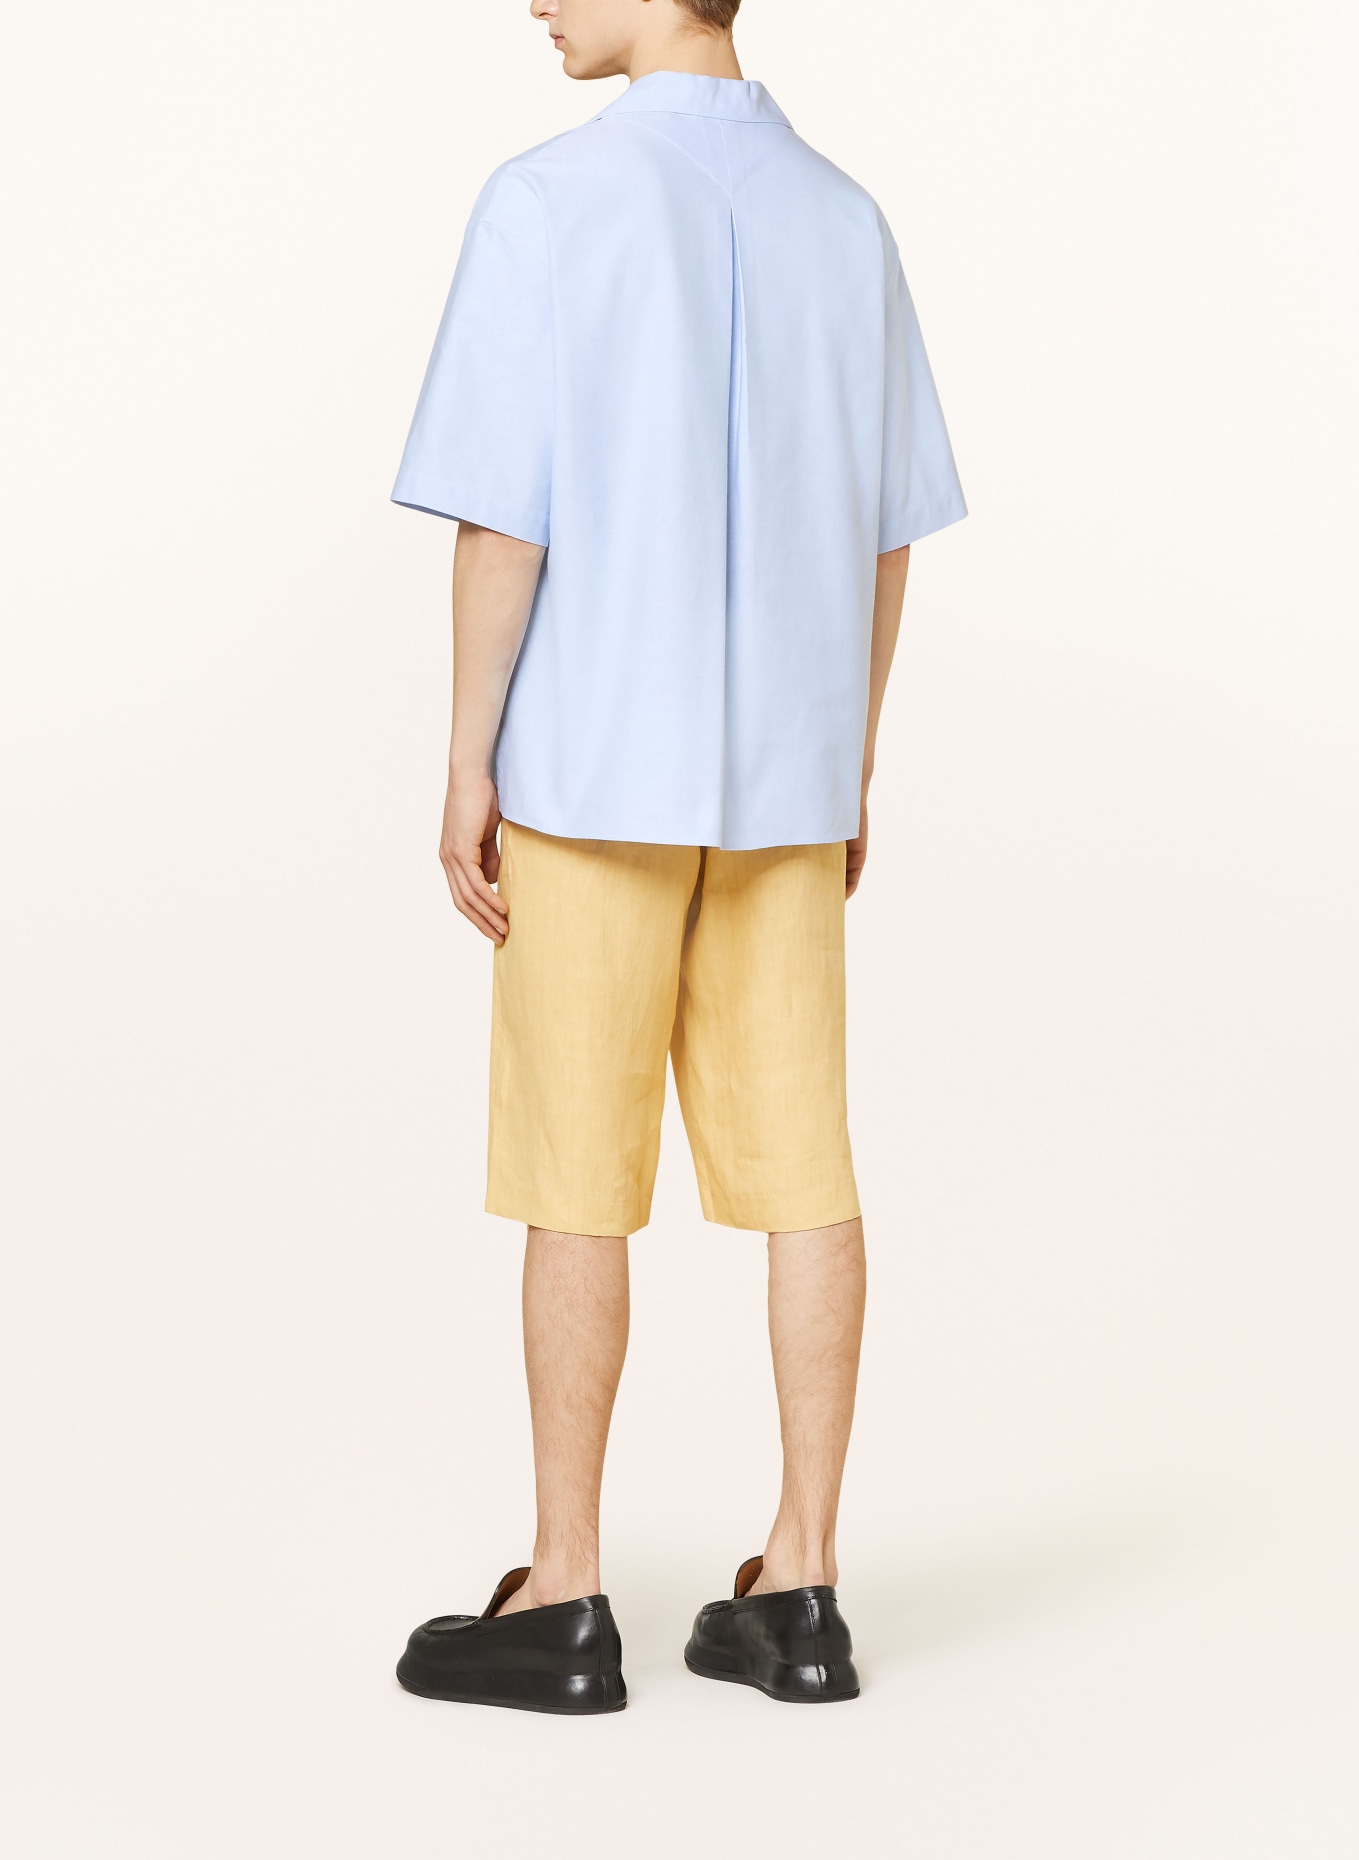 KENZO Resort shirt comfort fit, Color: LIGHT BLUE (Image 3)